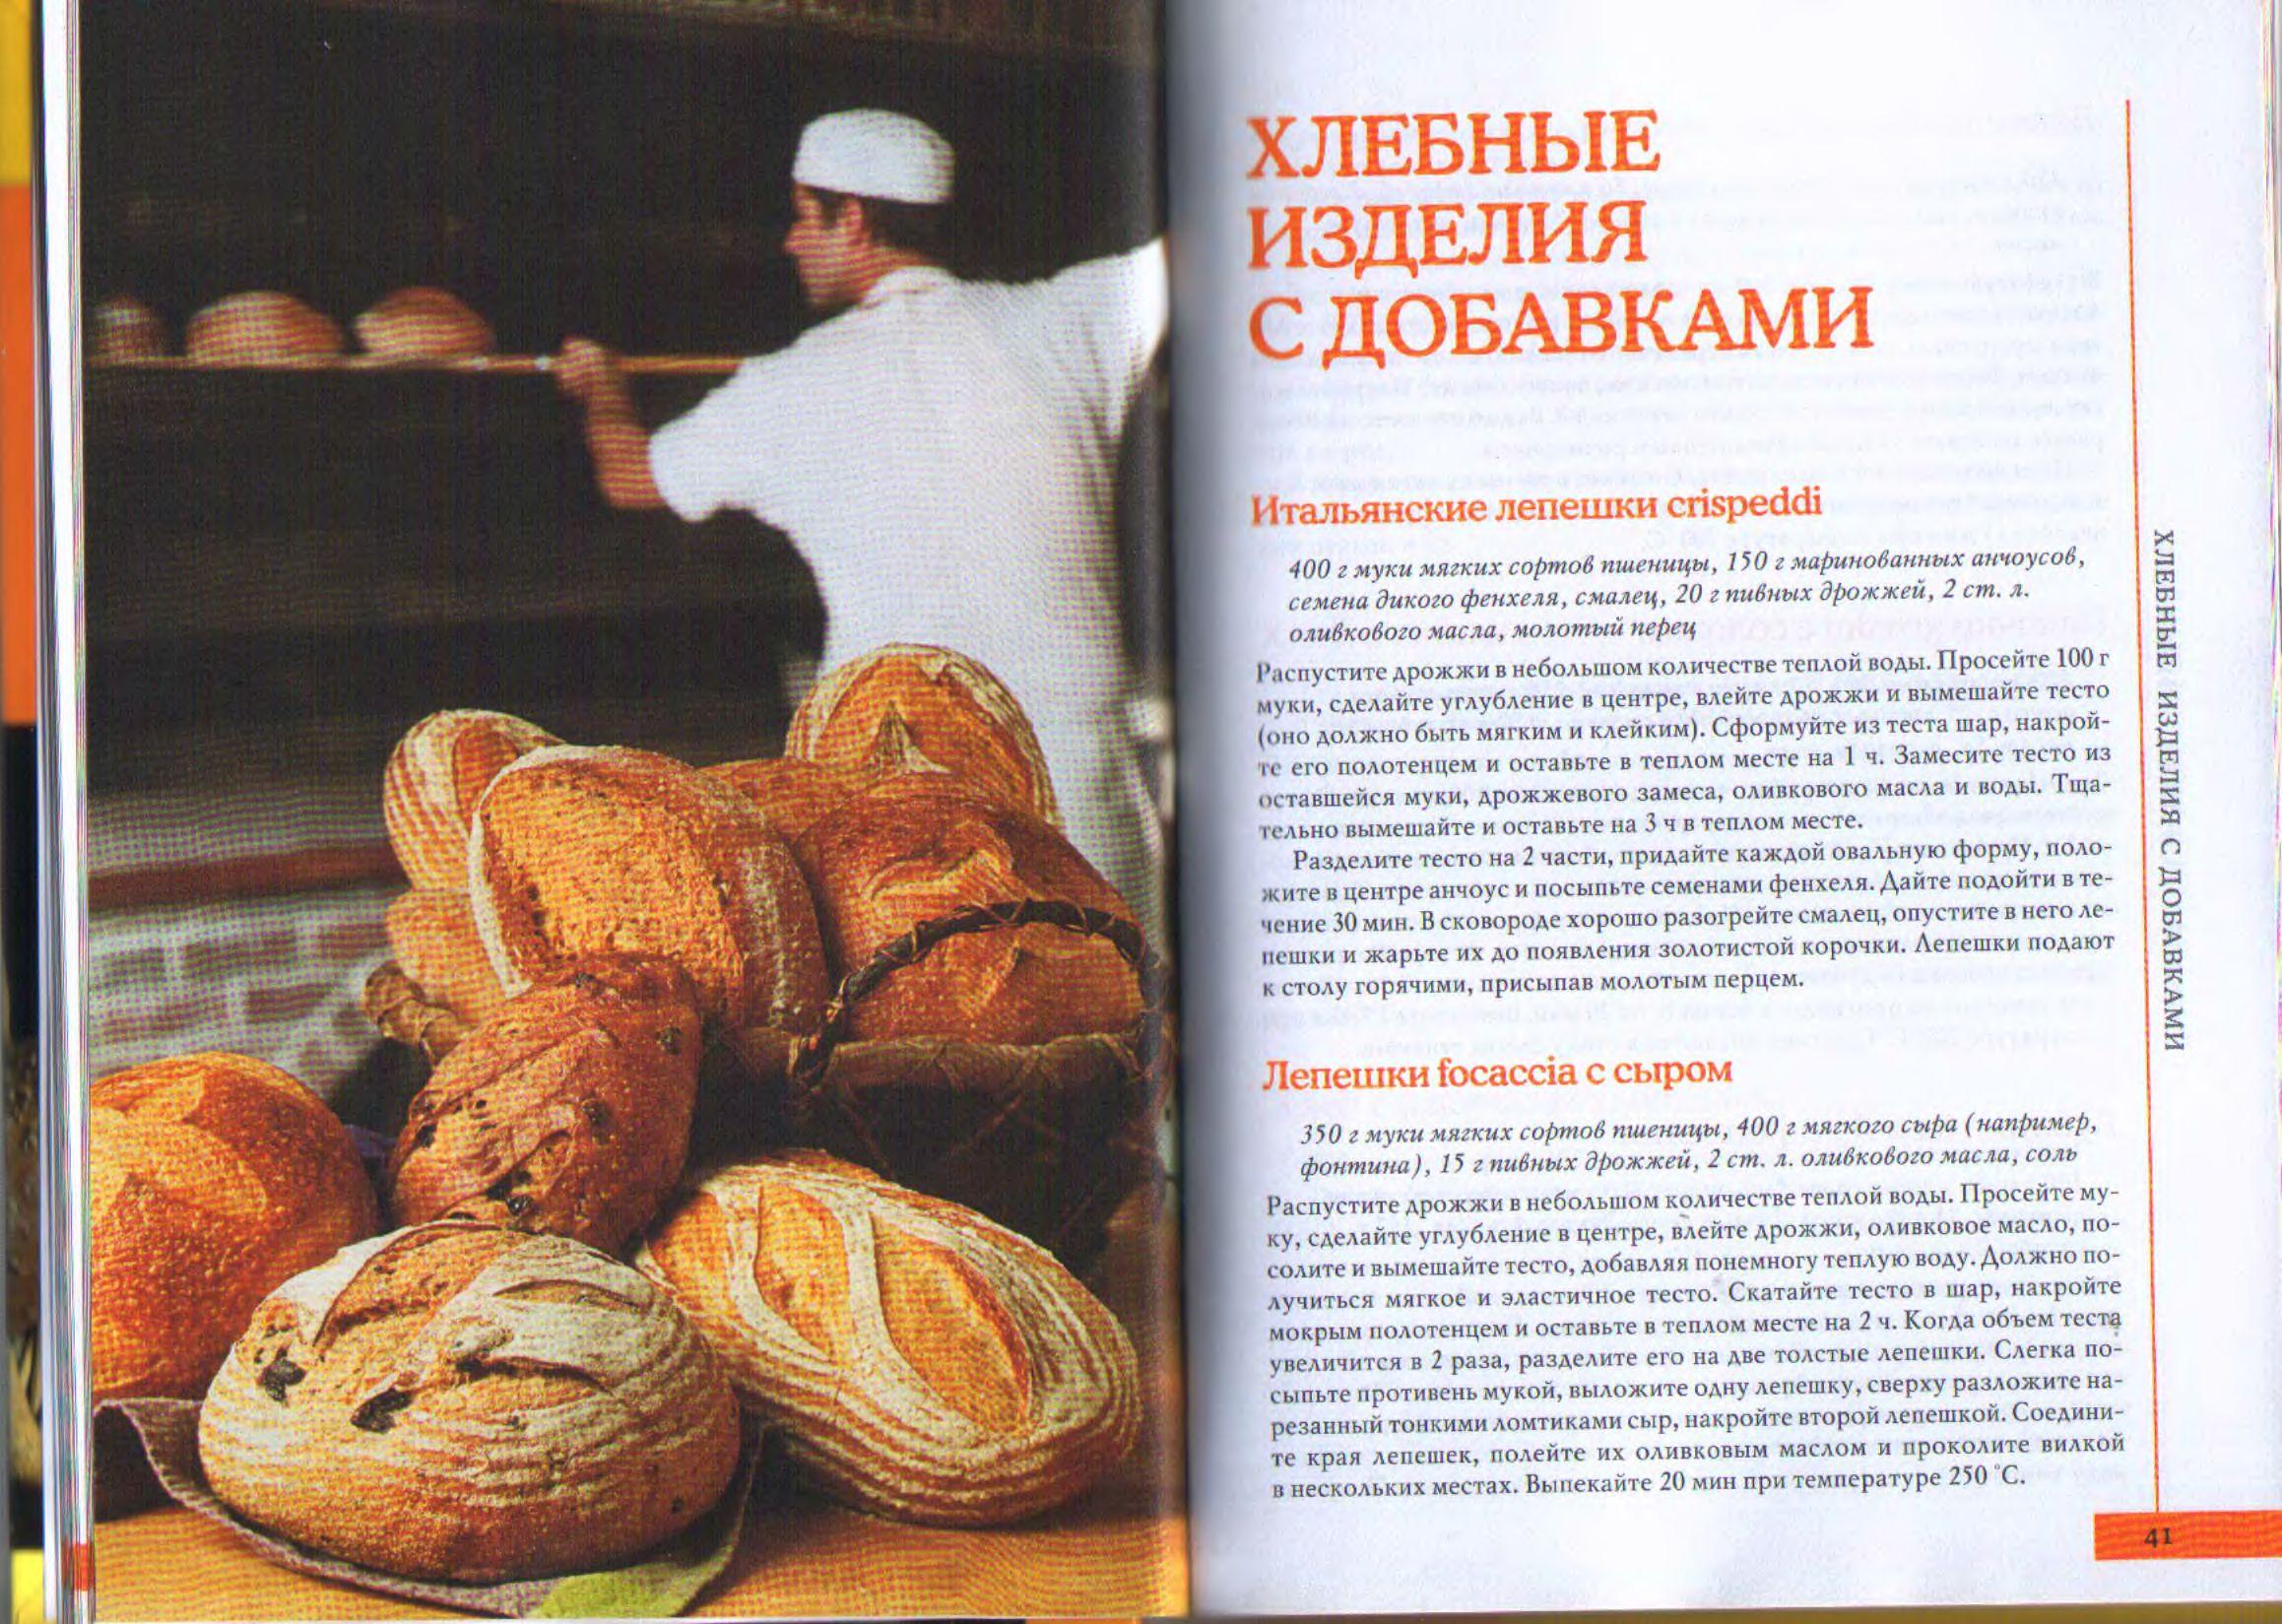 Рецепт на одну булку хлеба в духовке